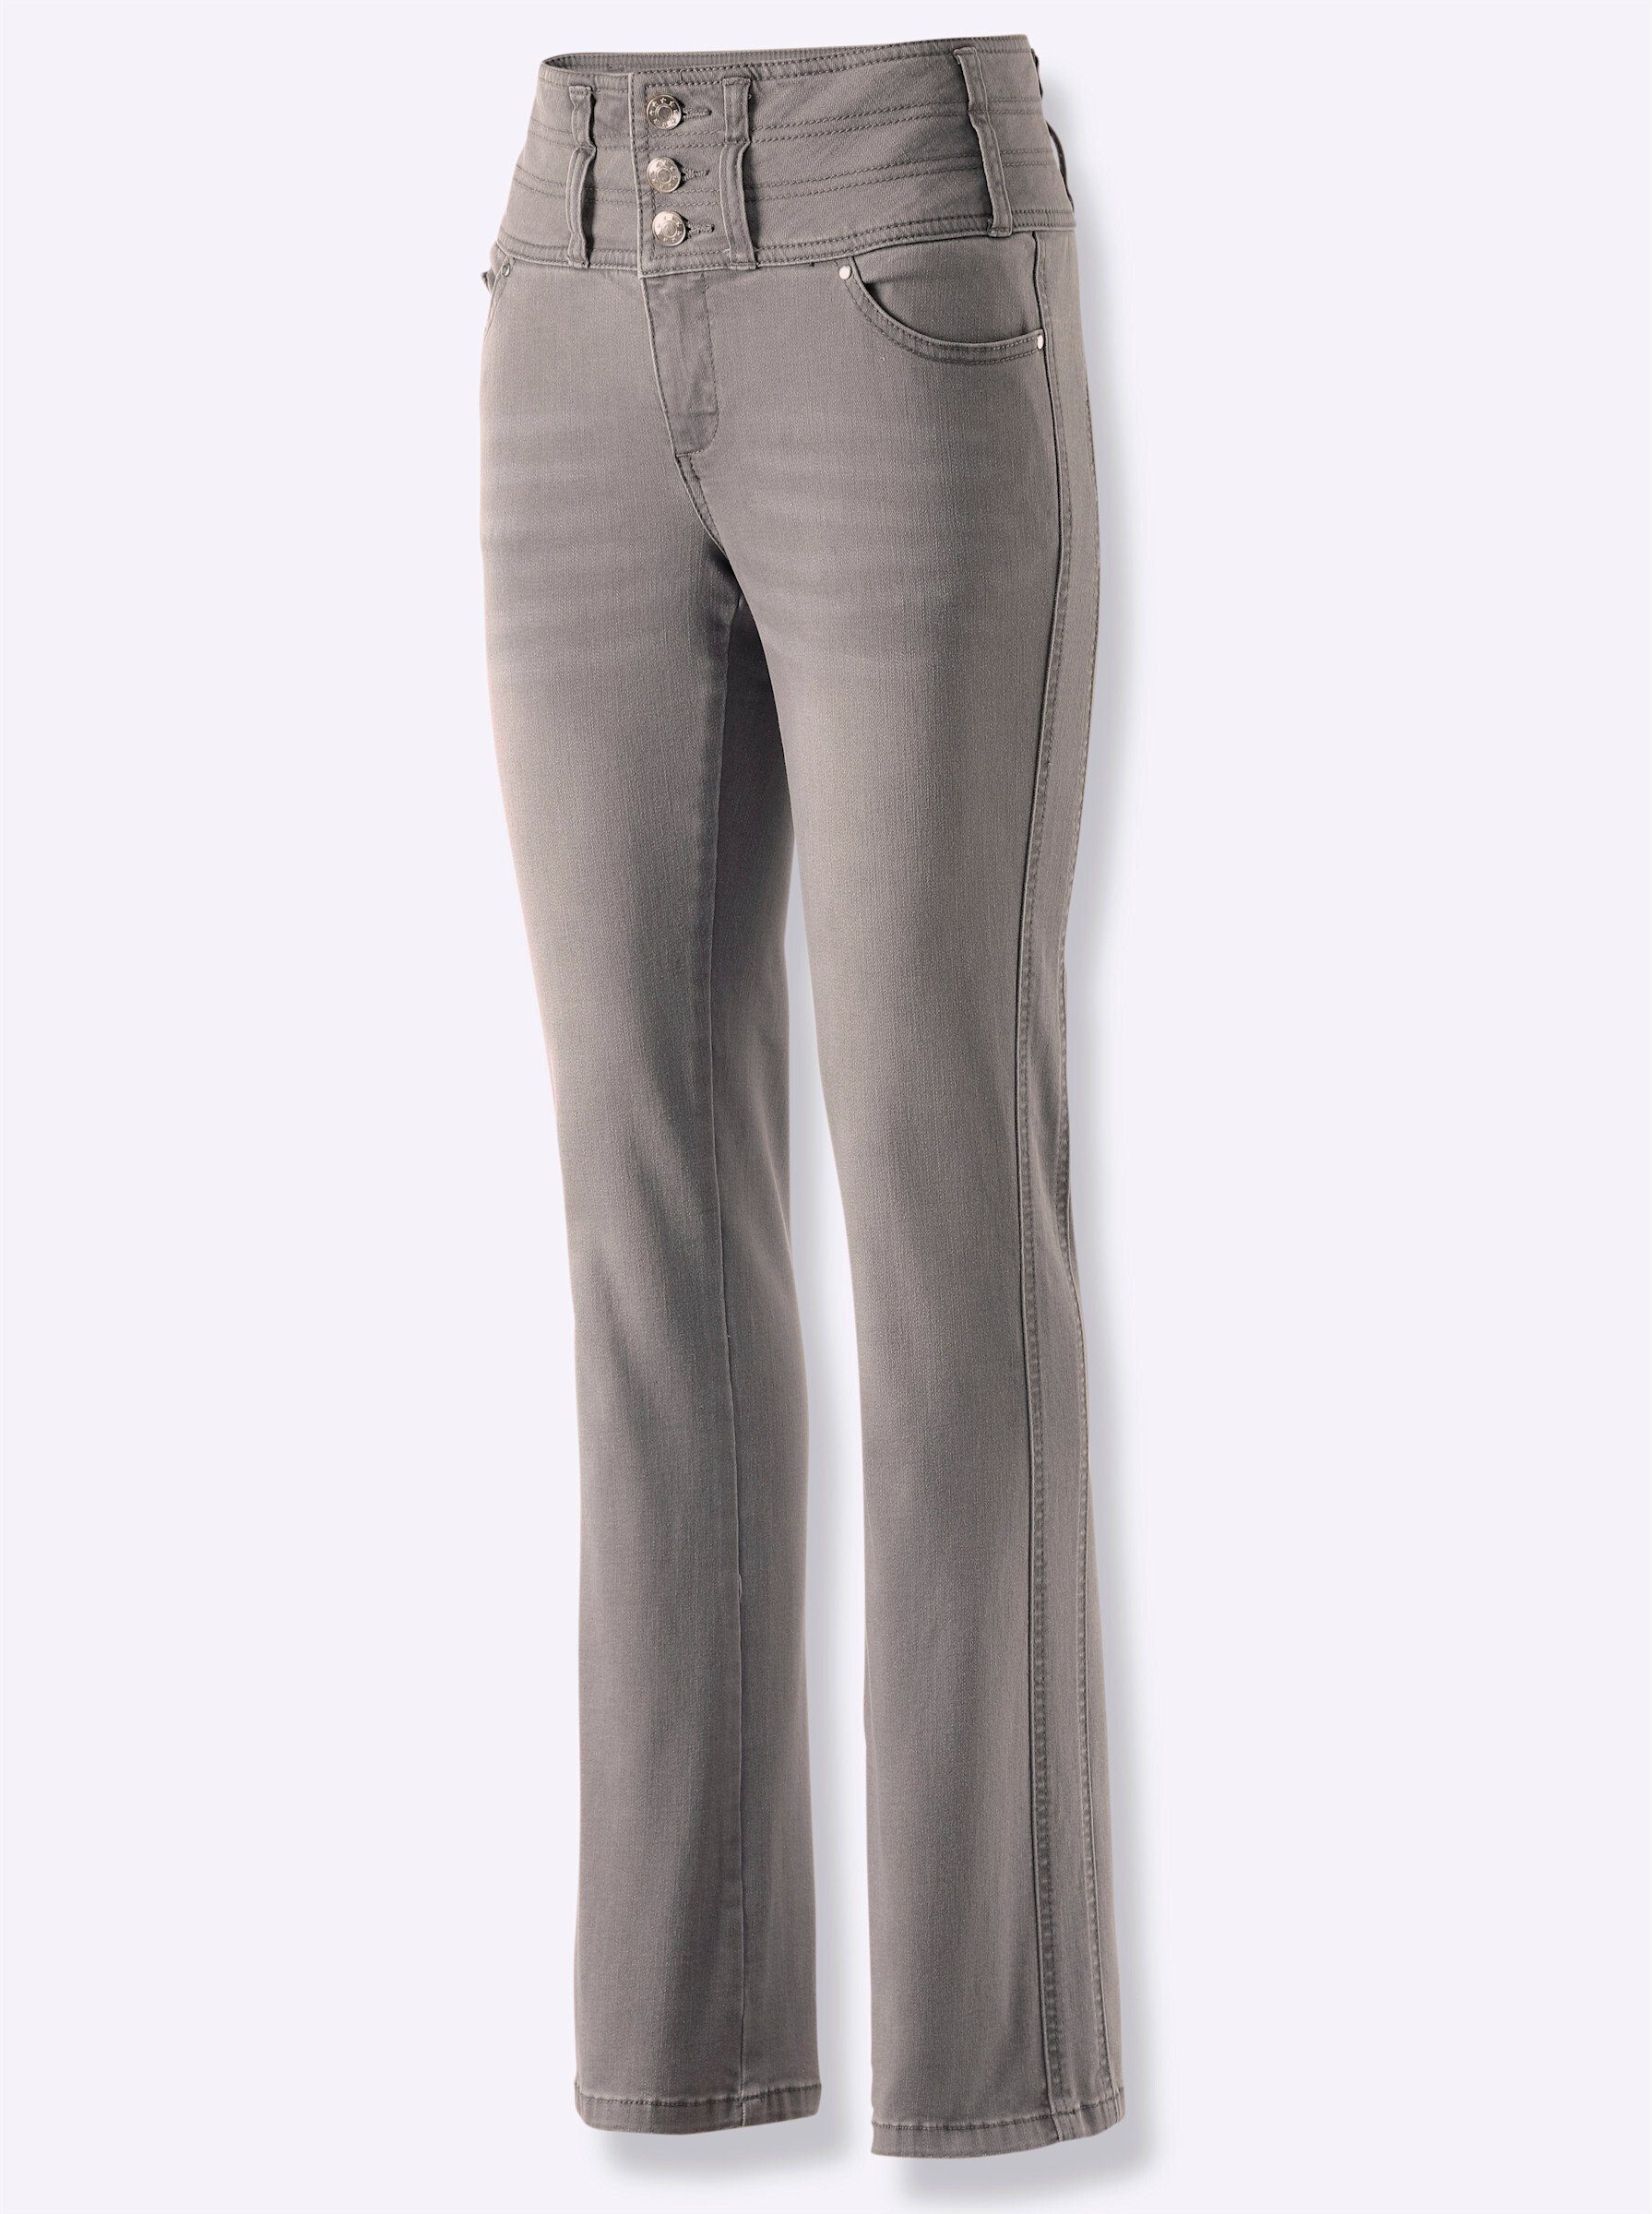 grey-denim WITT Bequeme light Jeans WEIDEN